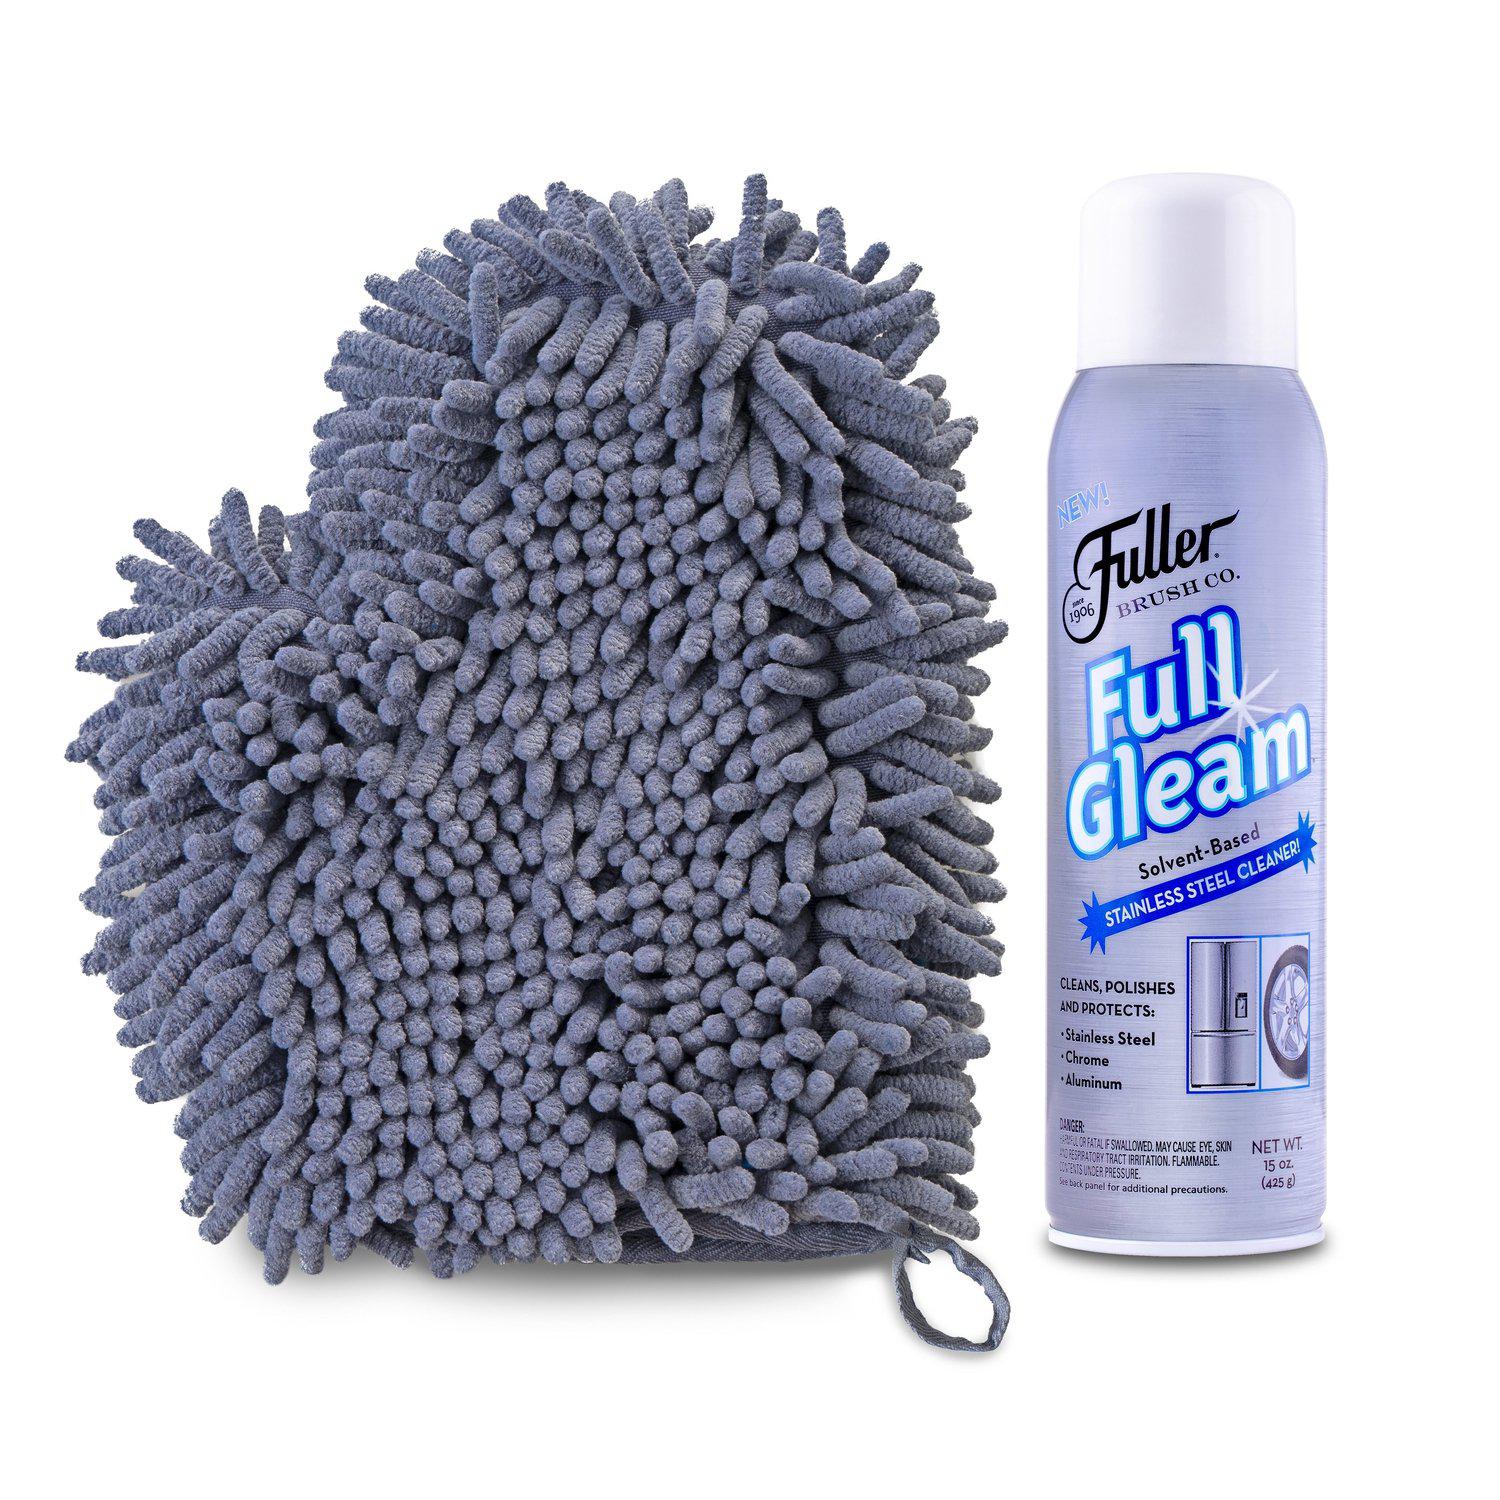 Fuller Brush Stainless Steel Sponges (Retail)